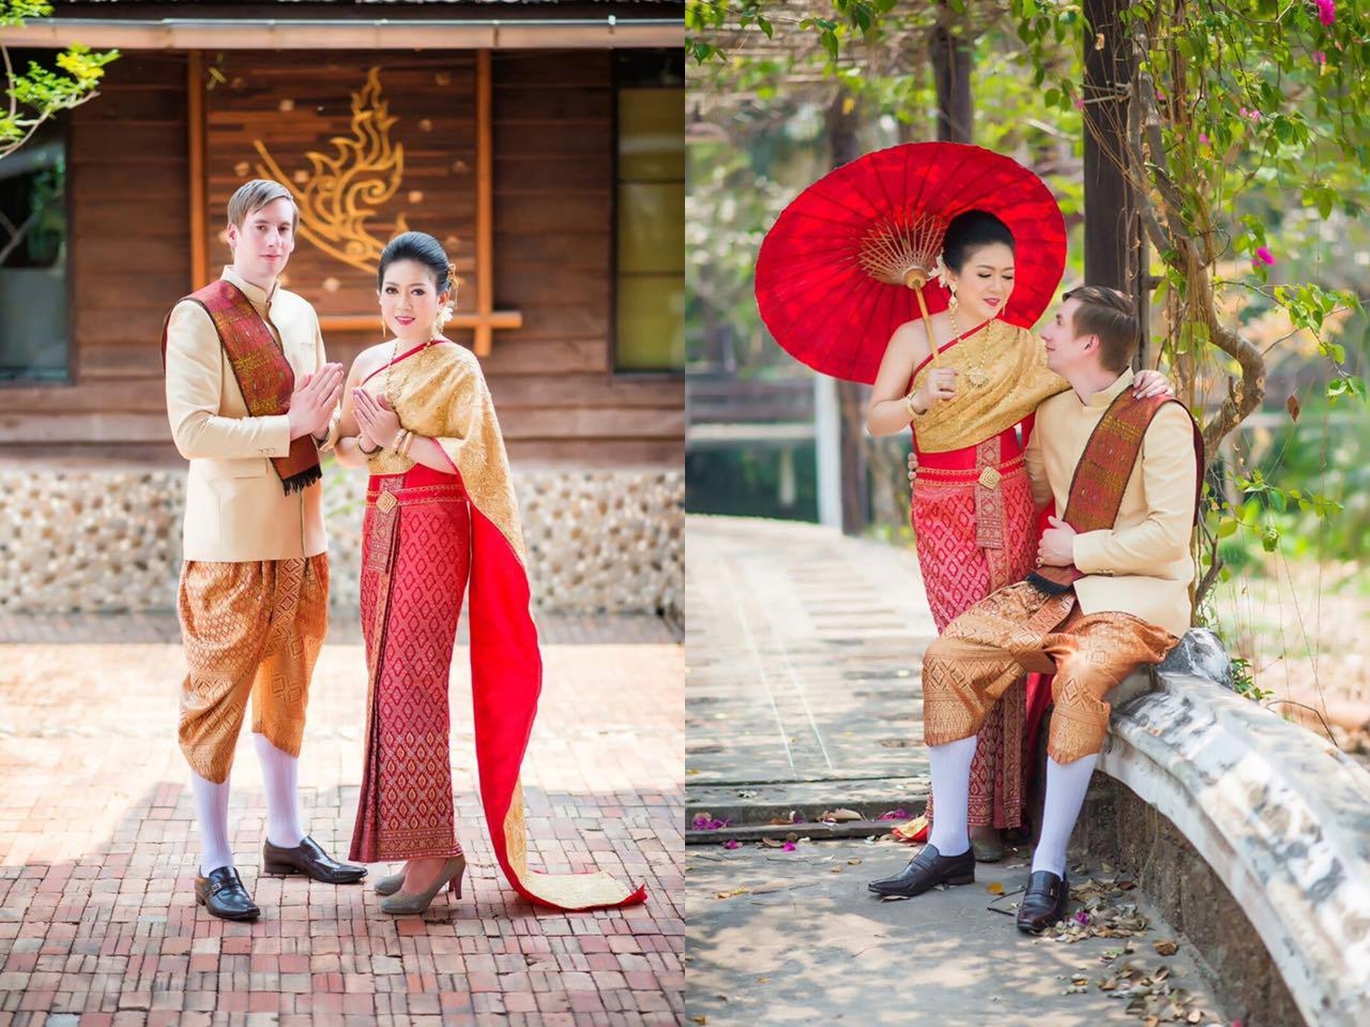 ขั้นตอนการจดทะเบียนสมรสที่ประเทศไทย